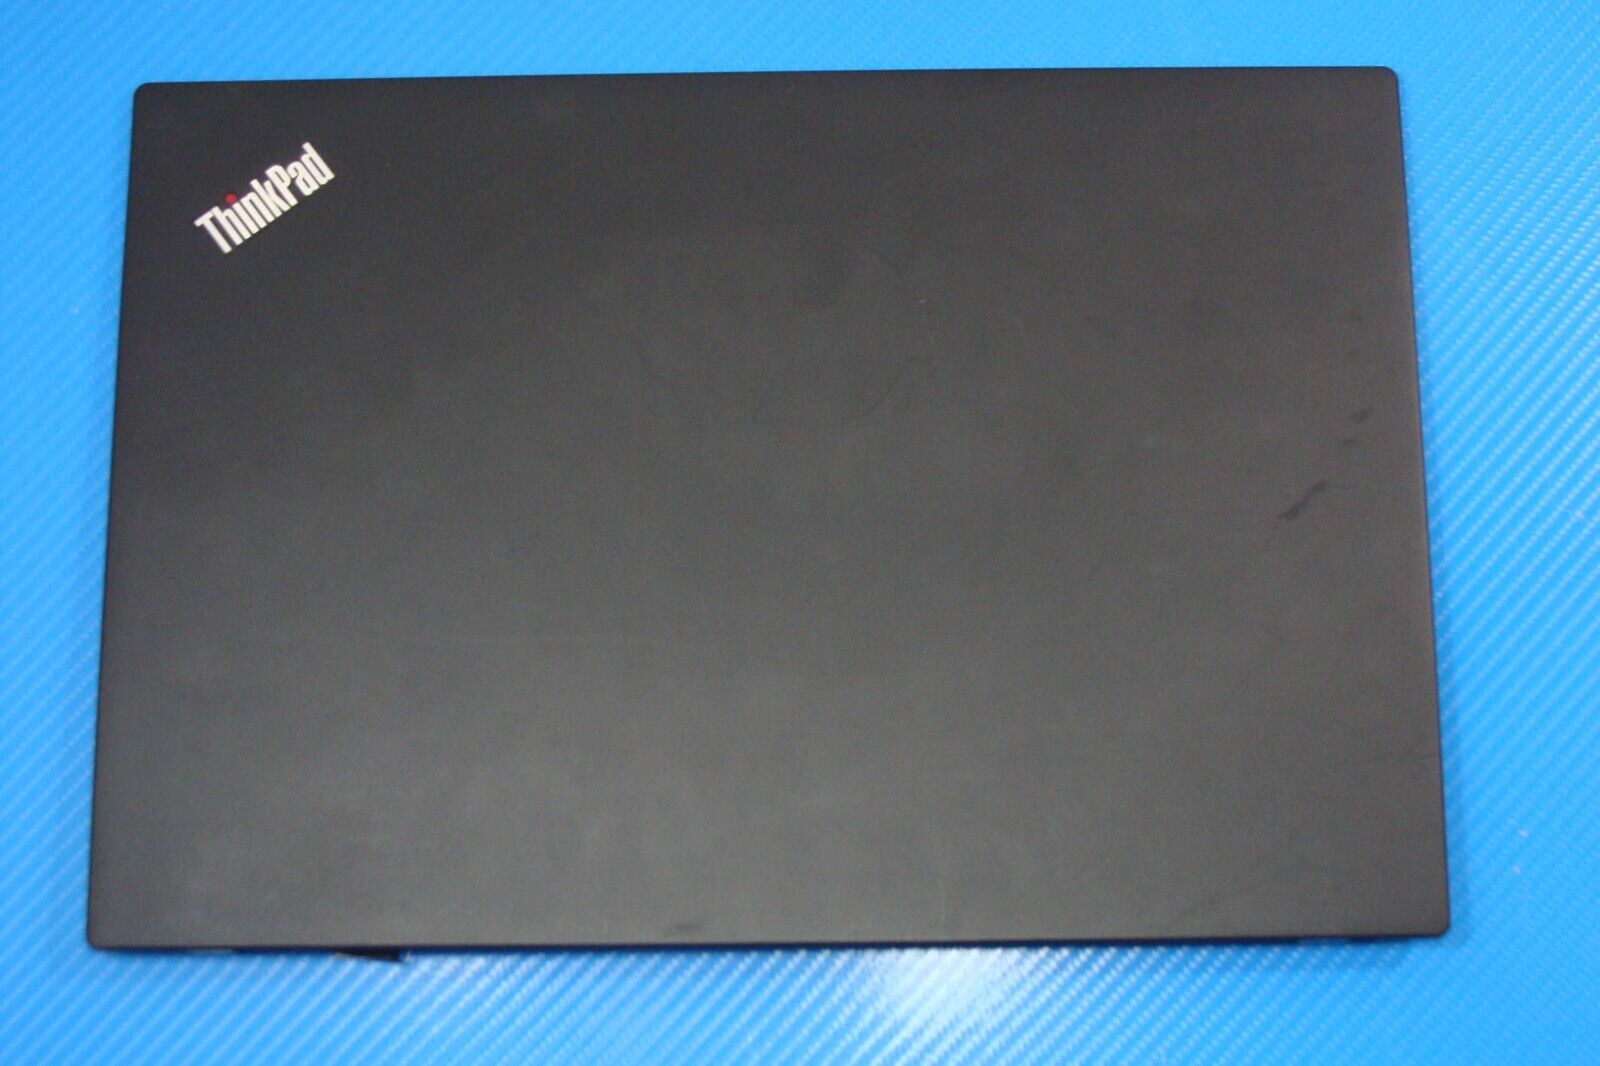 Lenovo ThinkPad T480s 14